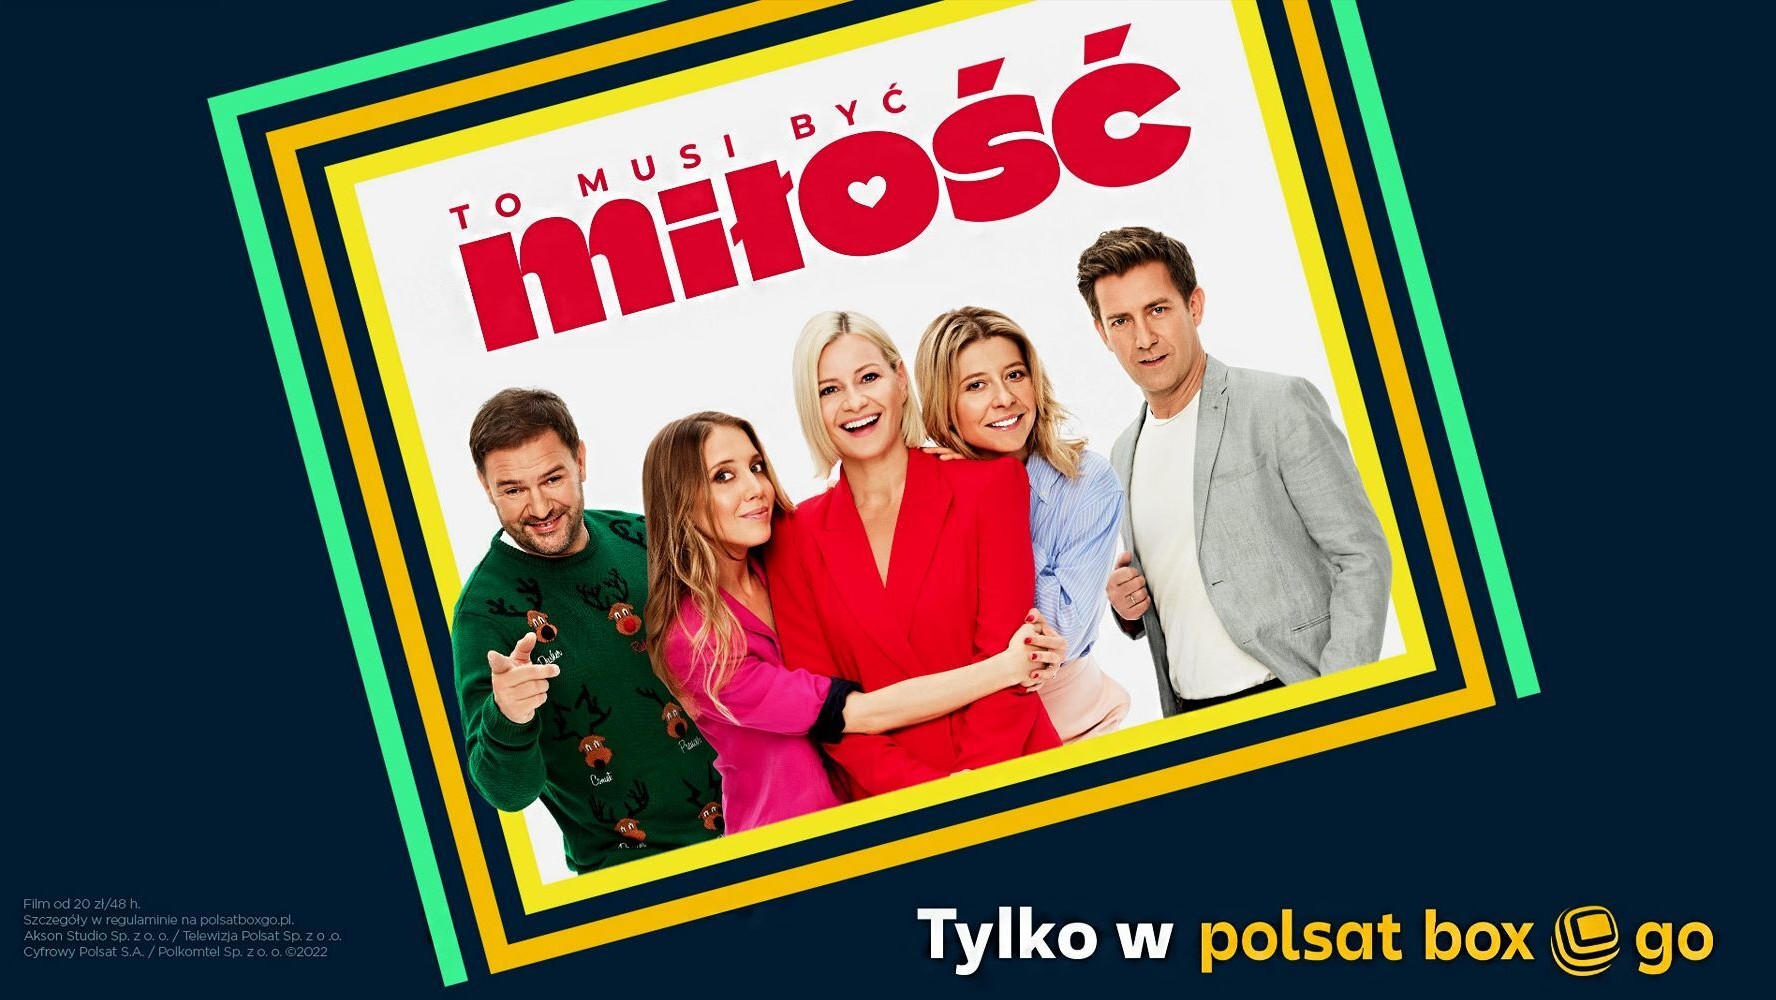 „To musi być miłość”: Polska premiera tylko w Polsat Box Go